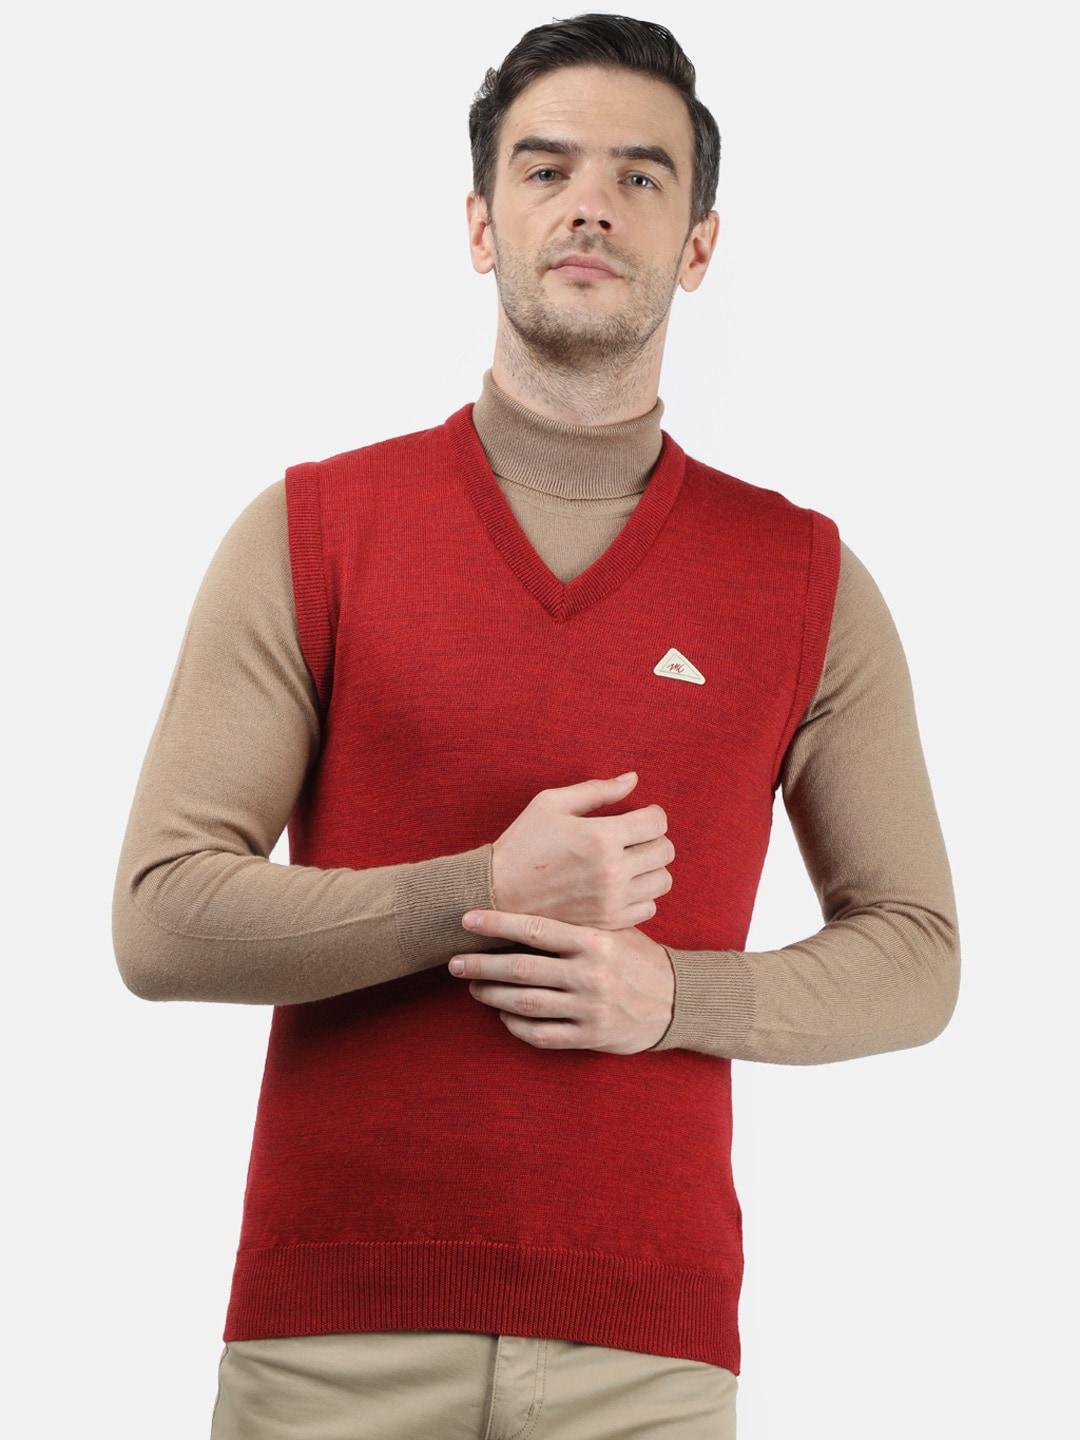 monte-carlo-men-red-sweater-vest